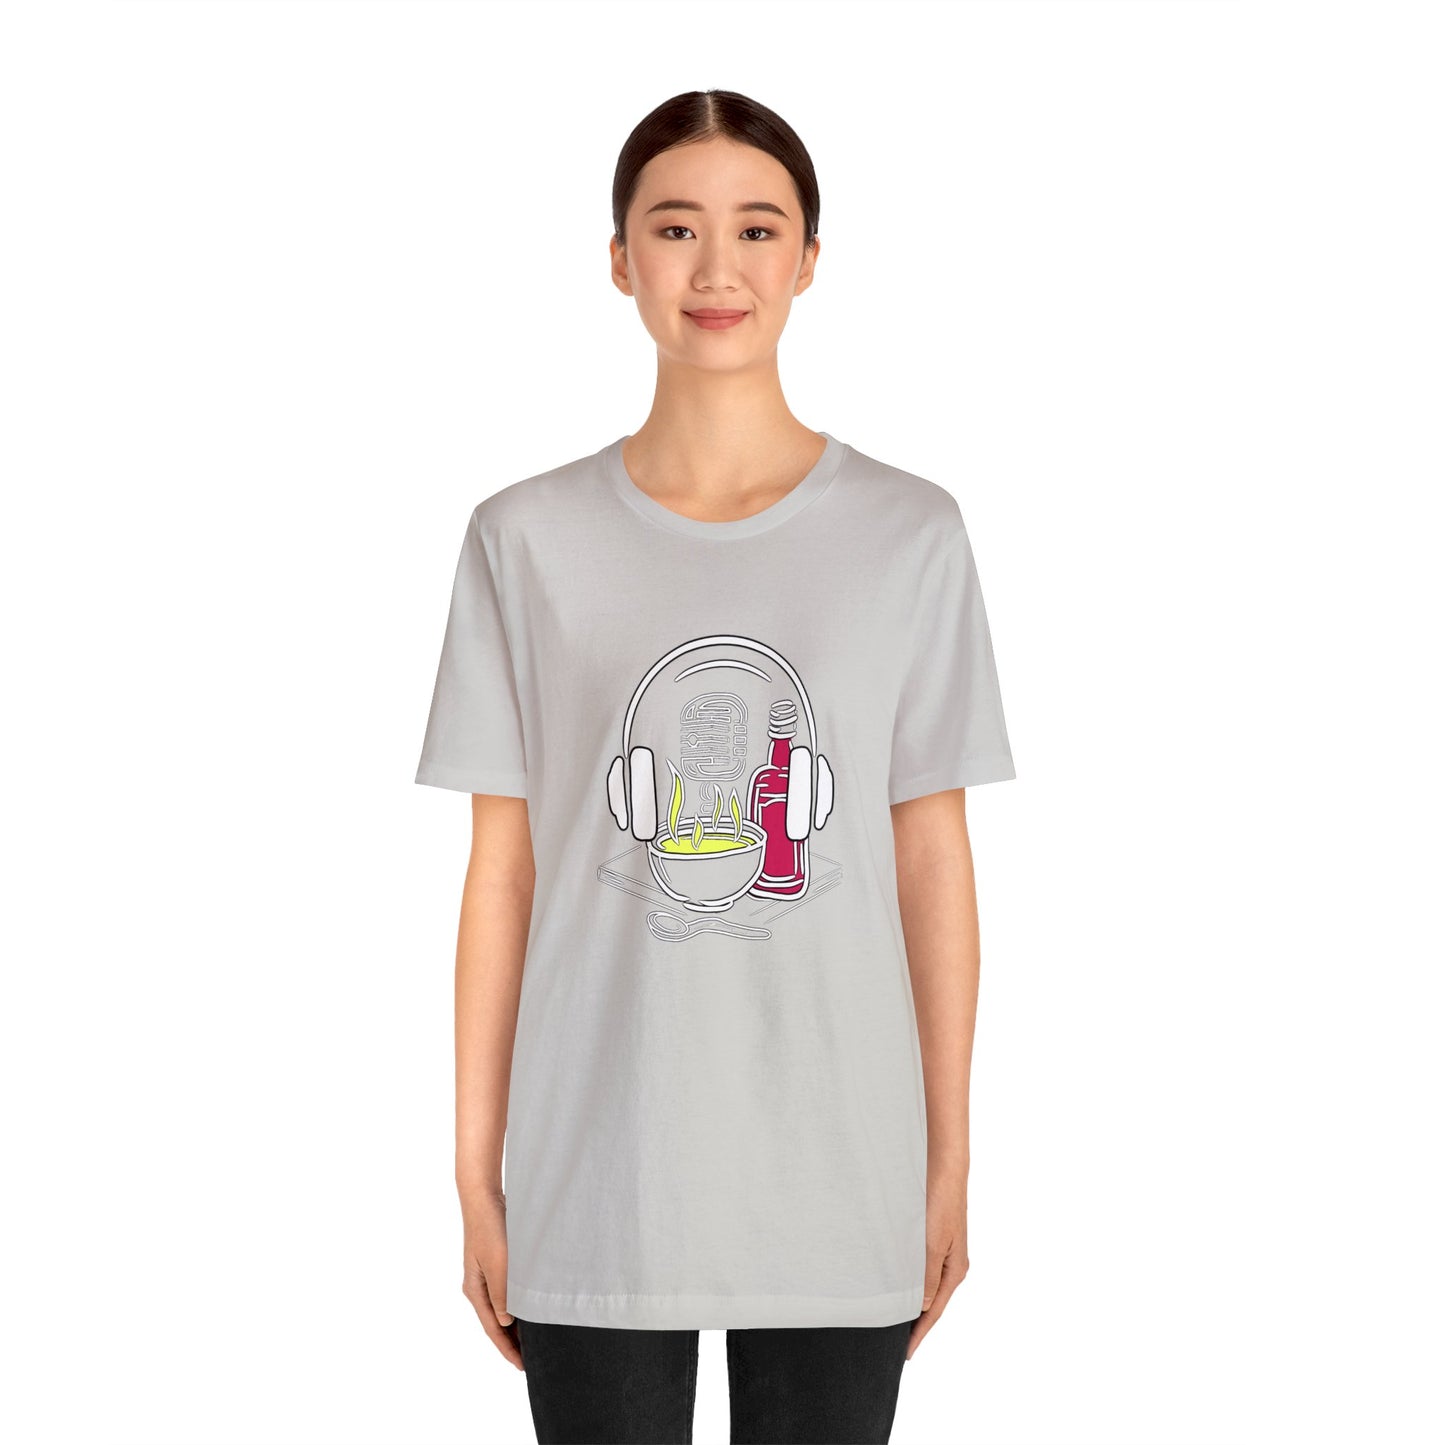 Schwefelsuppe & Himbeergeist Unisex T-Shirt in allen Farben